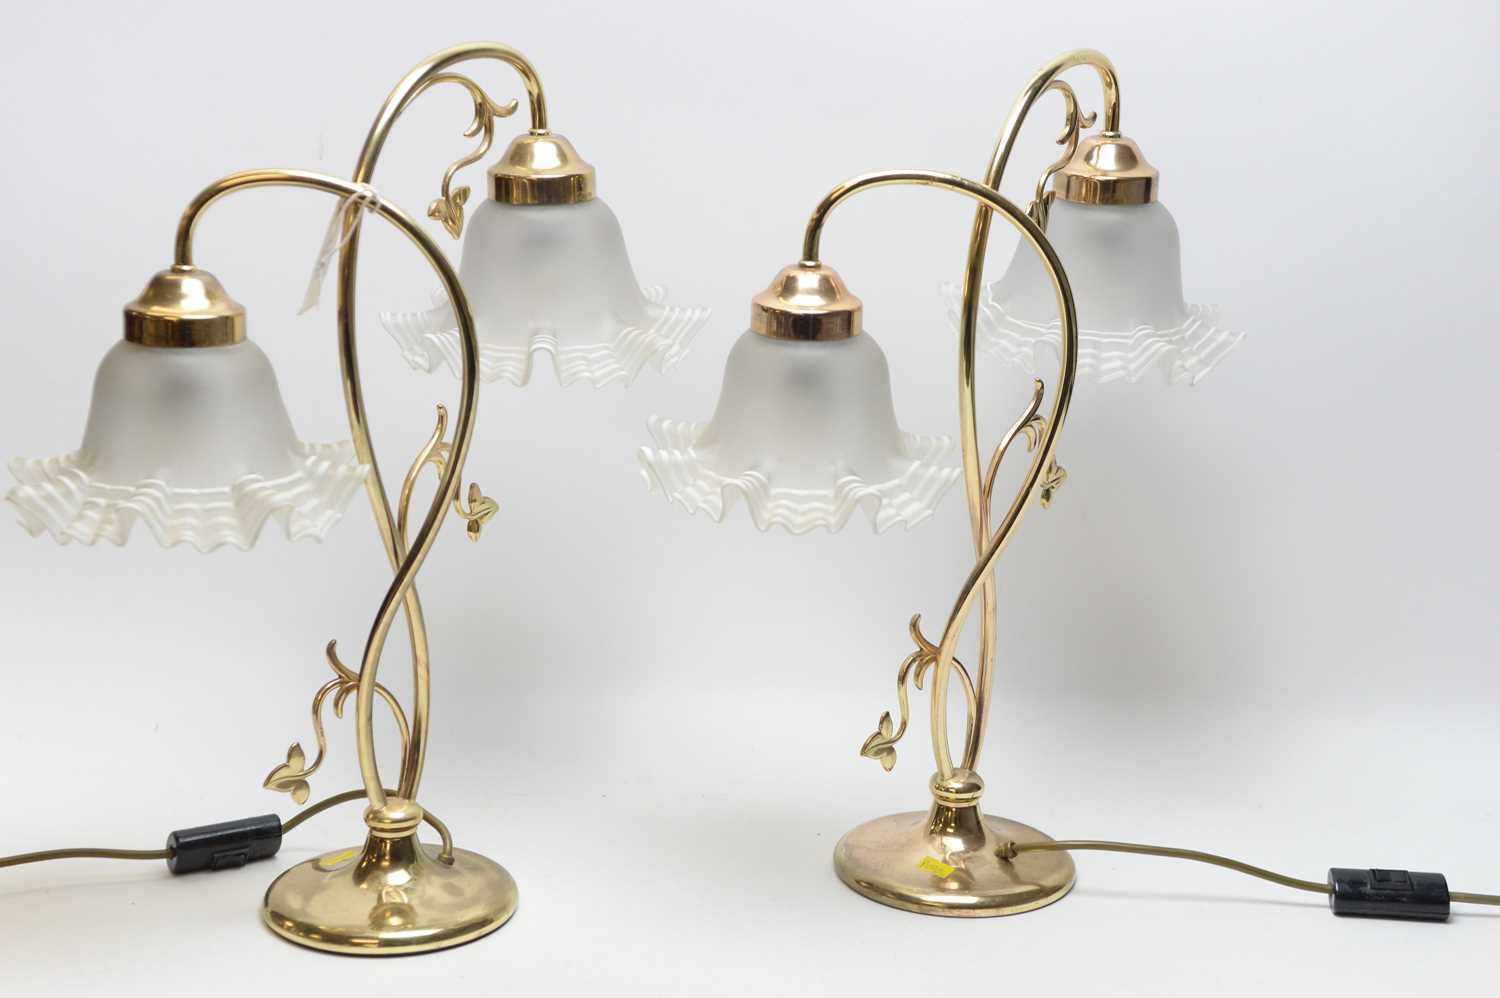 Lot 398 - A pair of Art Nouveau style table lamps.